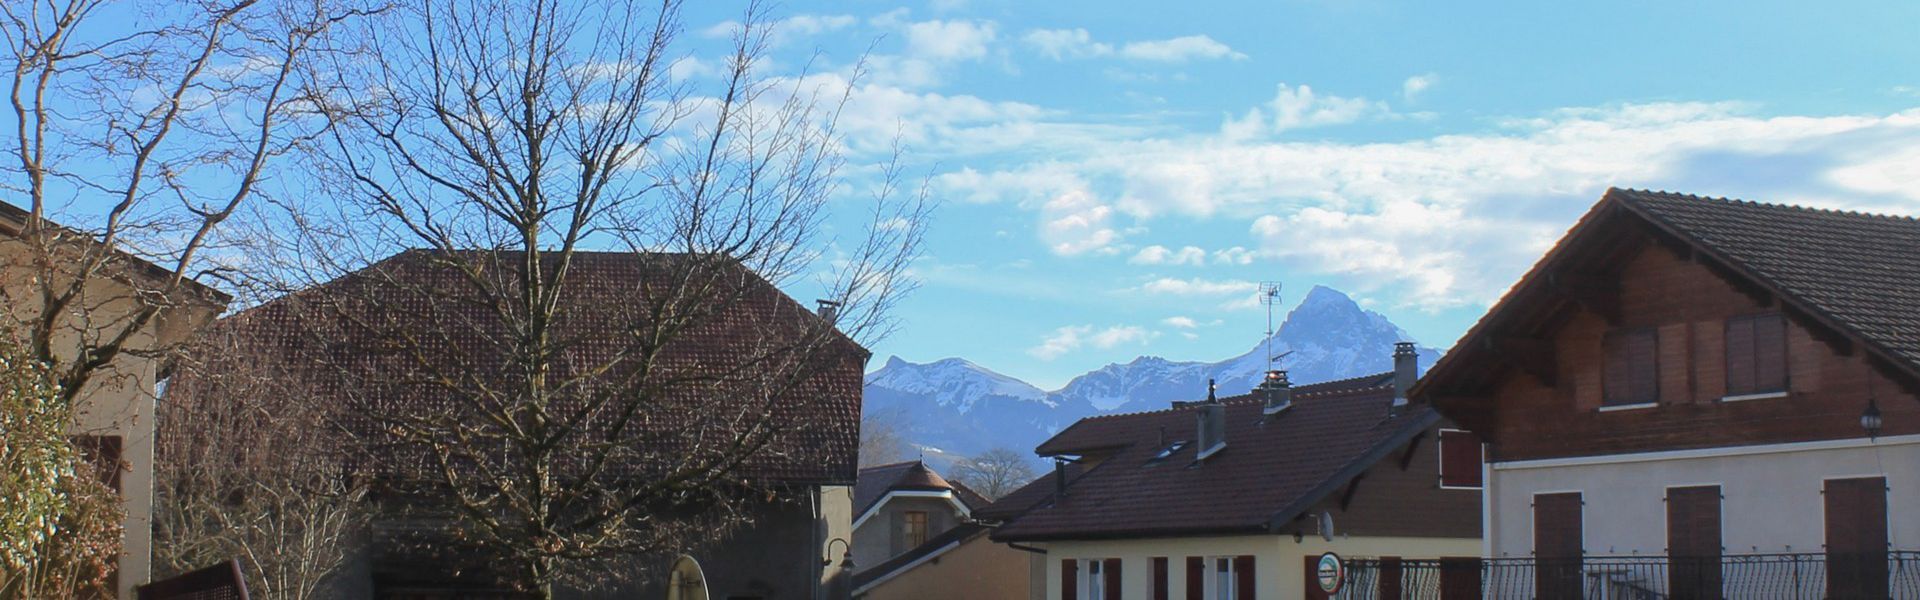 Larringes, pleasant village close to Evian-les-Bains